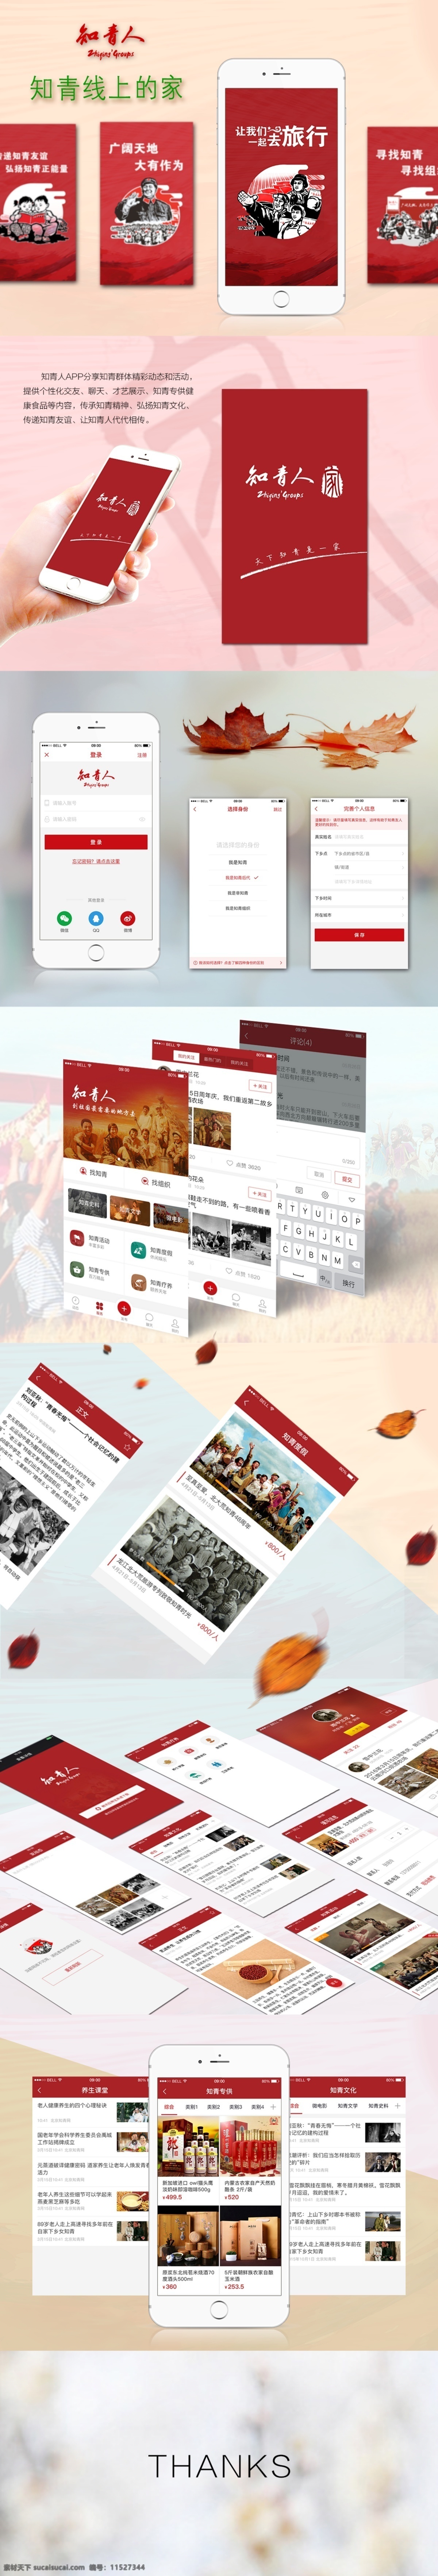 知青人app ui设计 手机app 红色年代 手机界面 移动界面设计